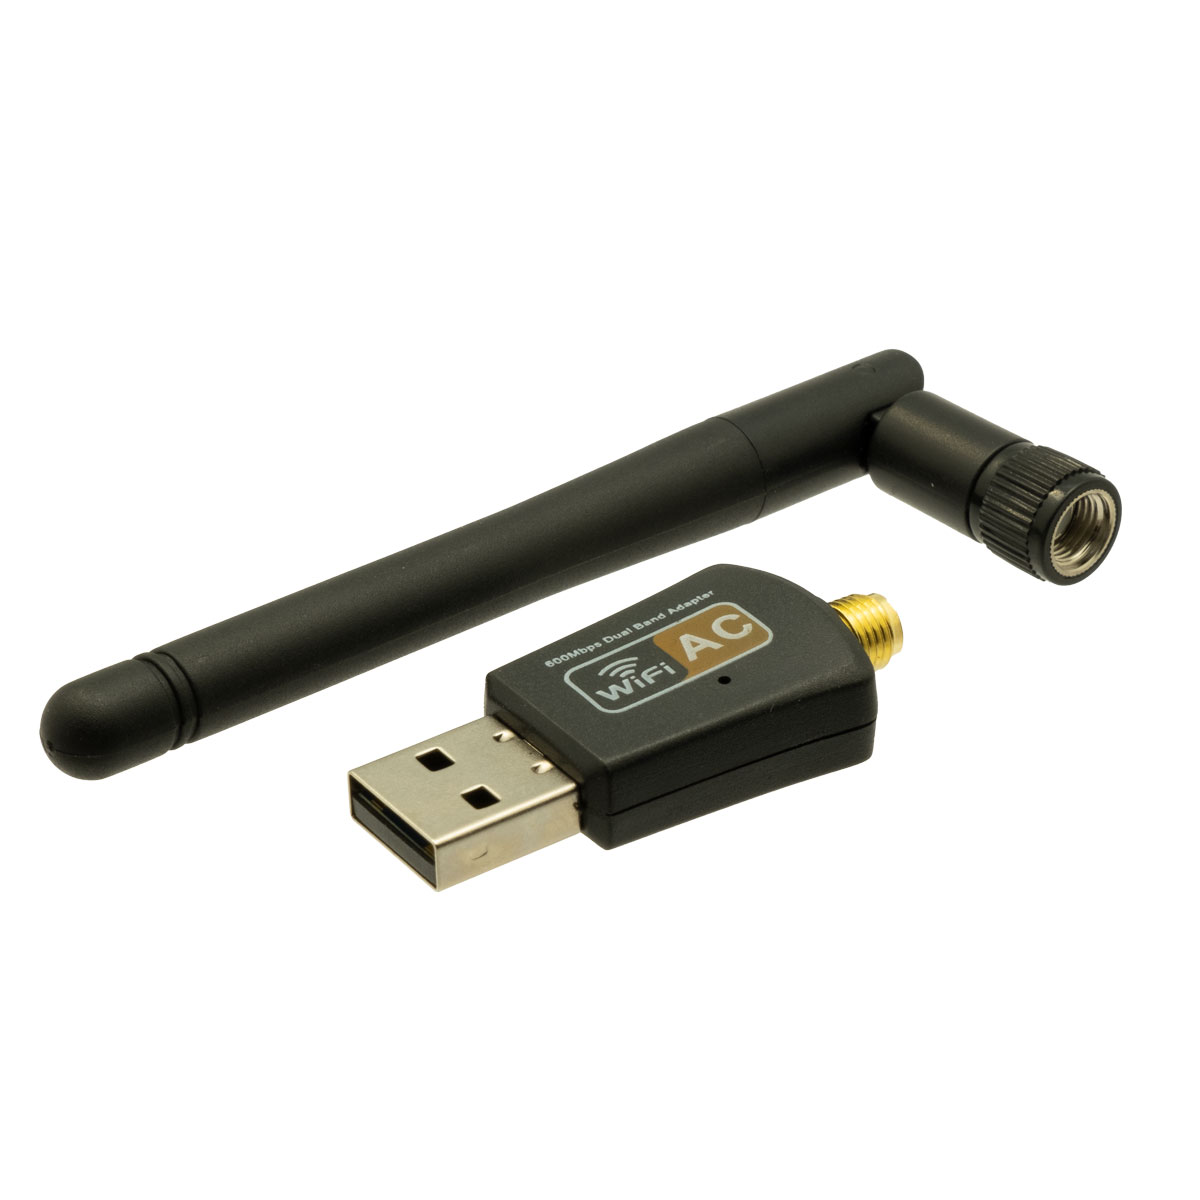 Adaptador WIFI AC por USB, 600Mbps + 5dBi antena